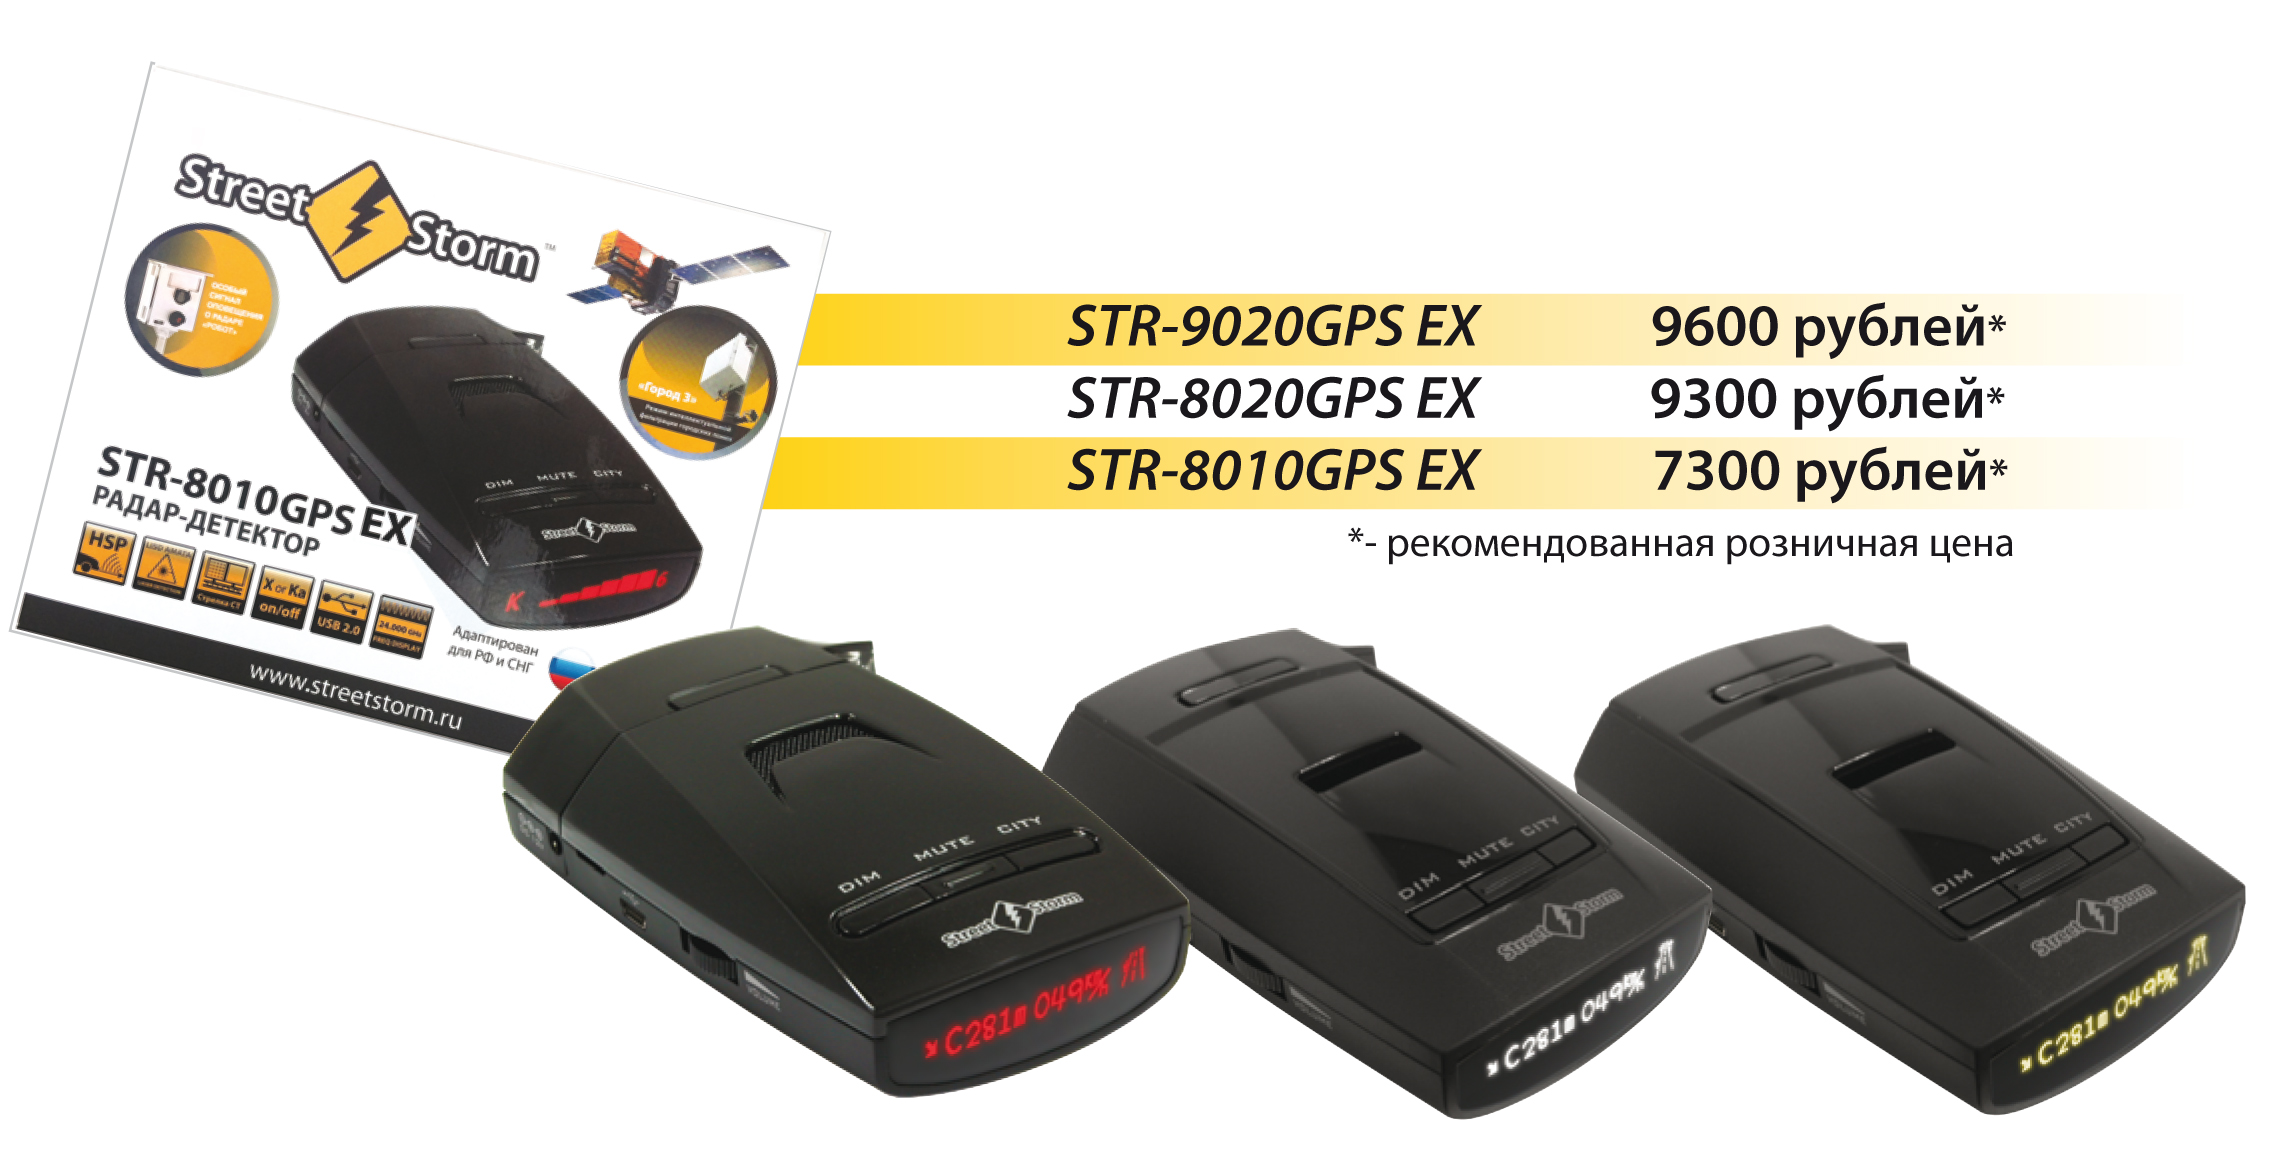 Street Storm  STR-9020GPS EX, STR-8020GPS EX и STR-8010GPS EX